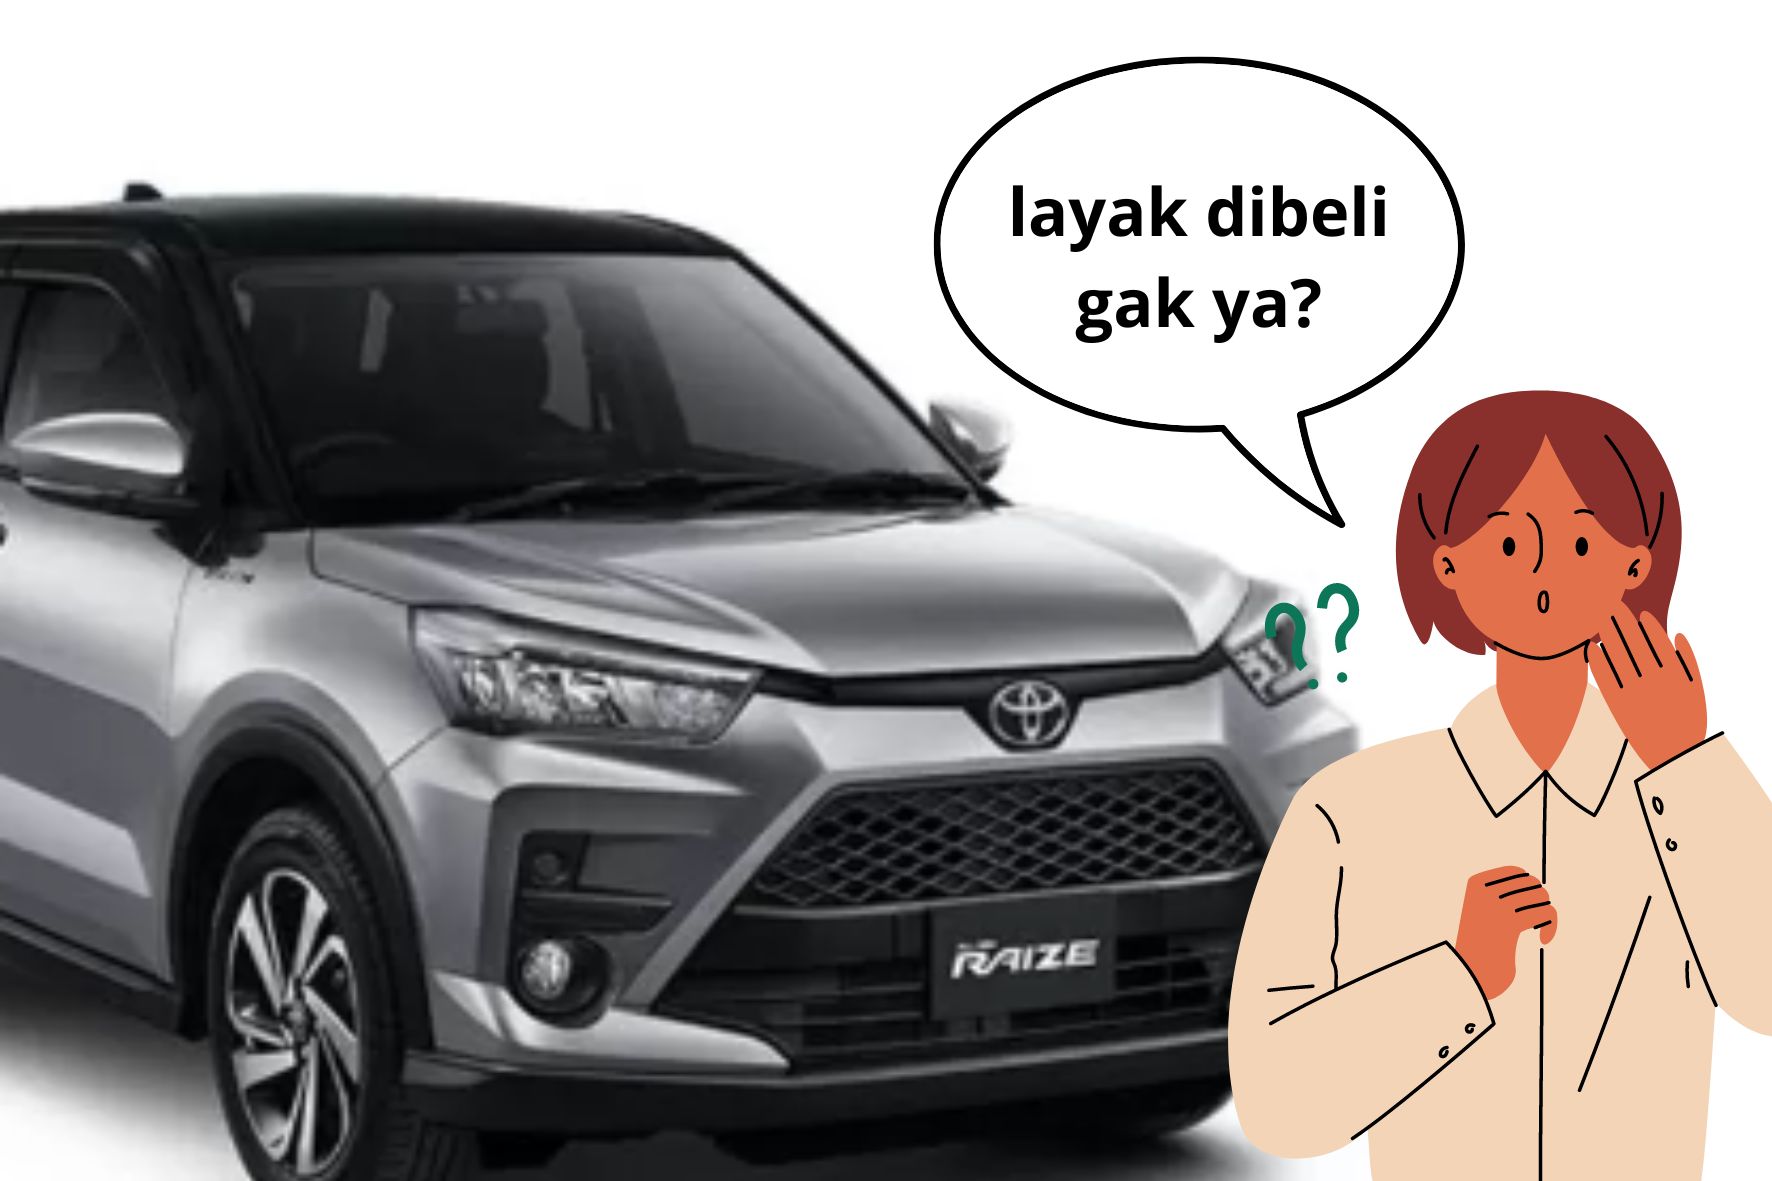 Review Toyota Raize 2024, Harga Cuma 200 Jutaan Tapi Klaim Fitur Super Canggih, Layak Dibeli Gak Ya?